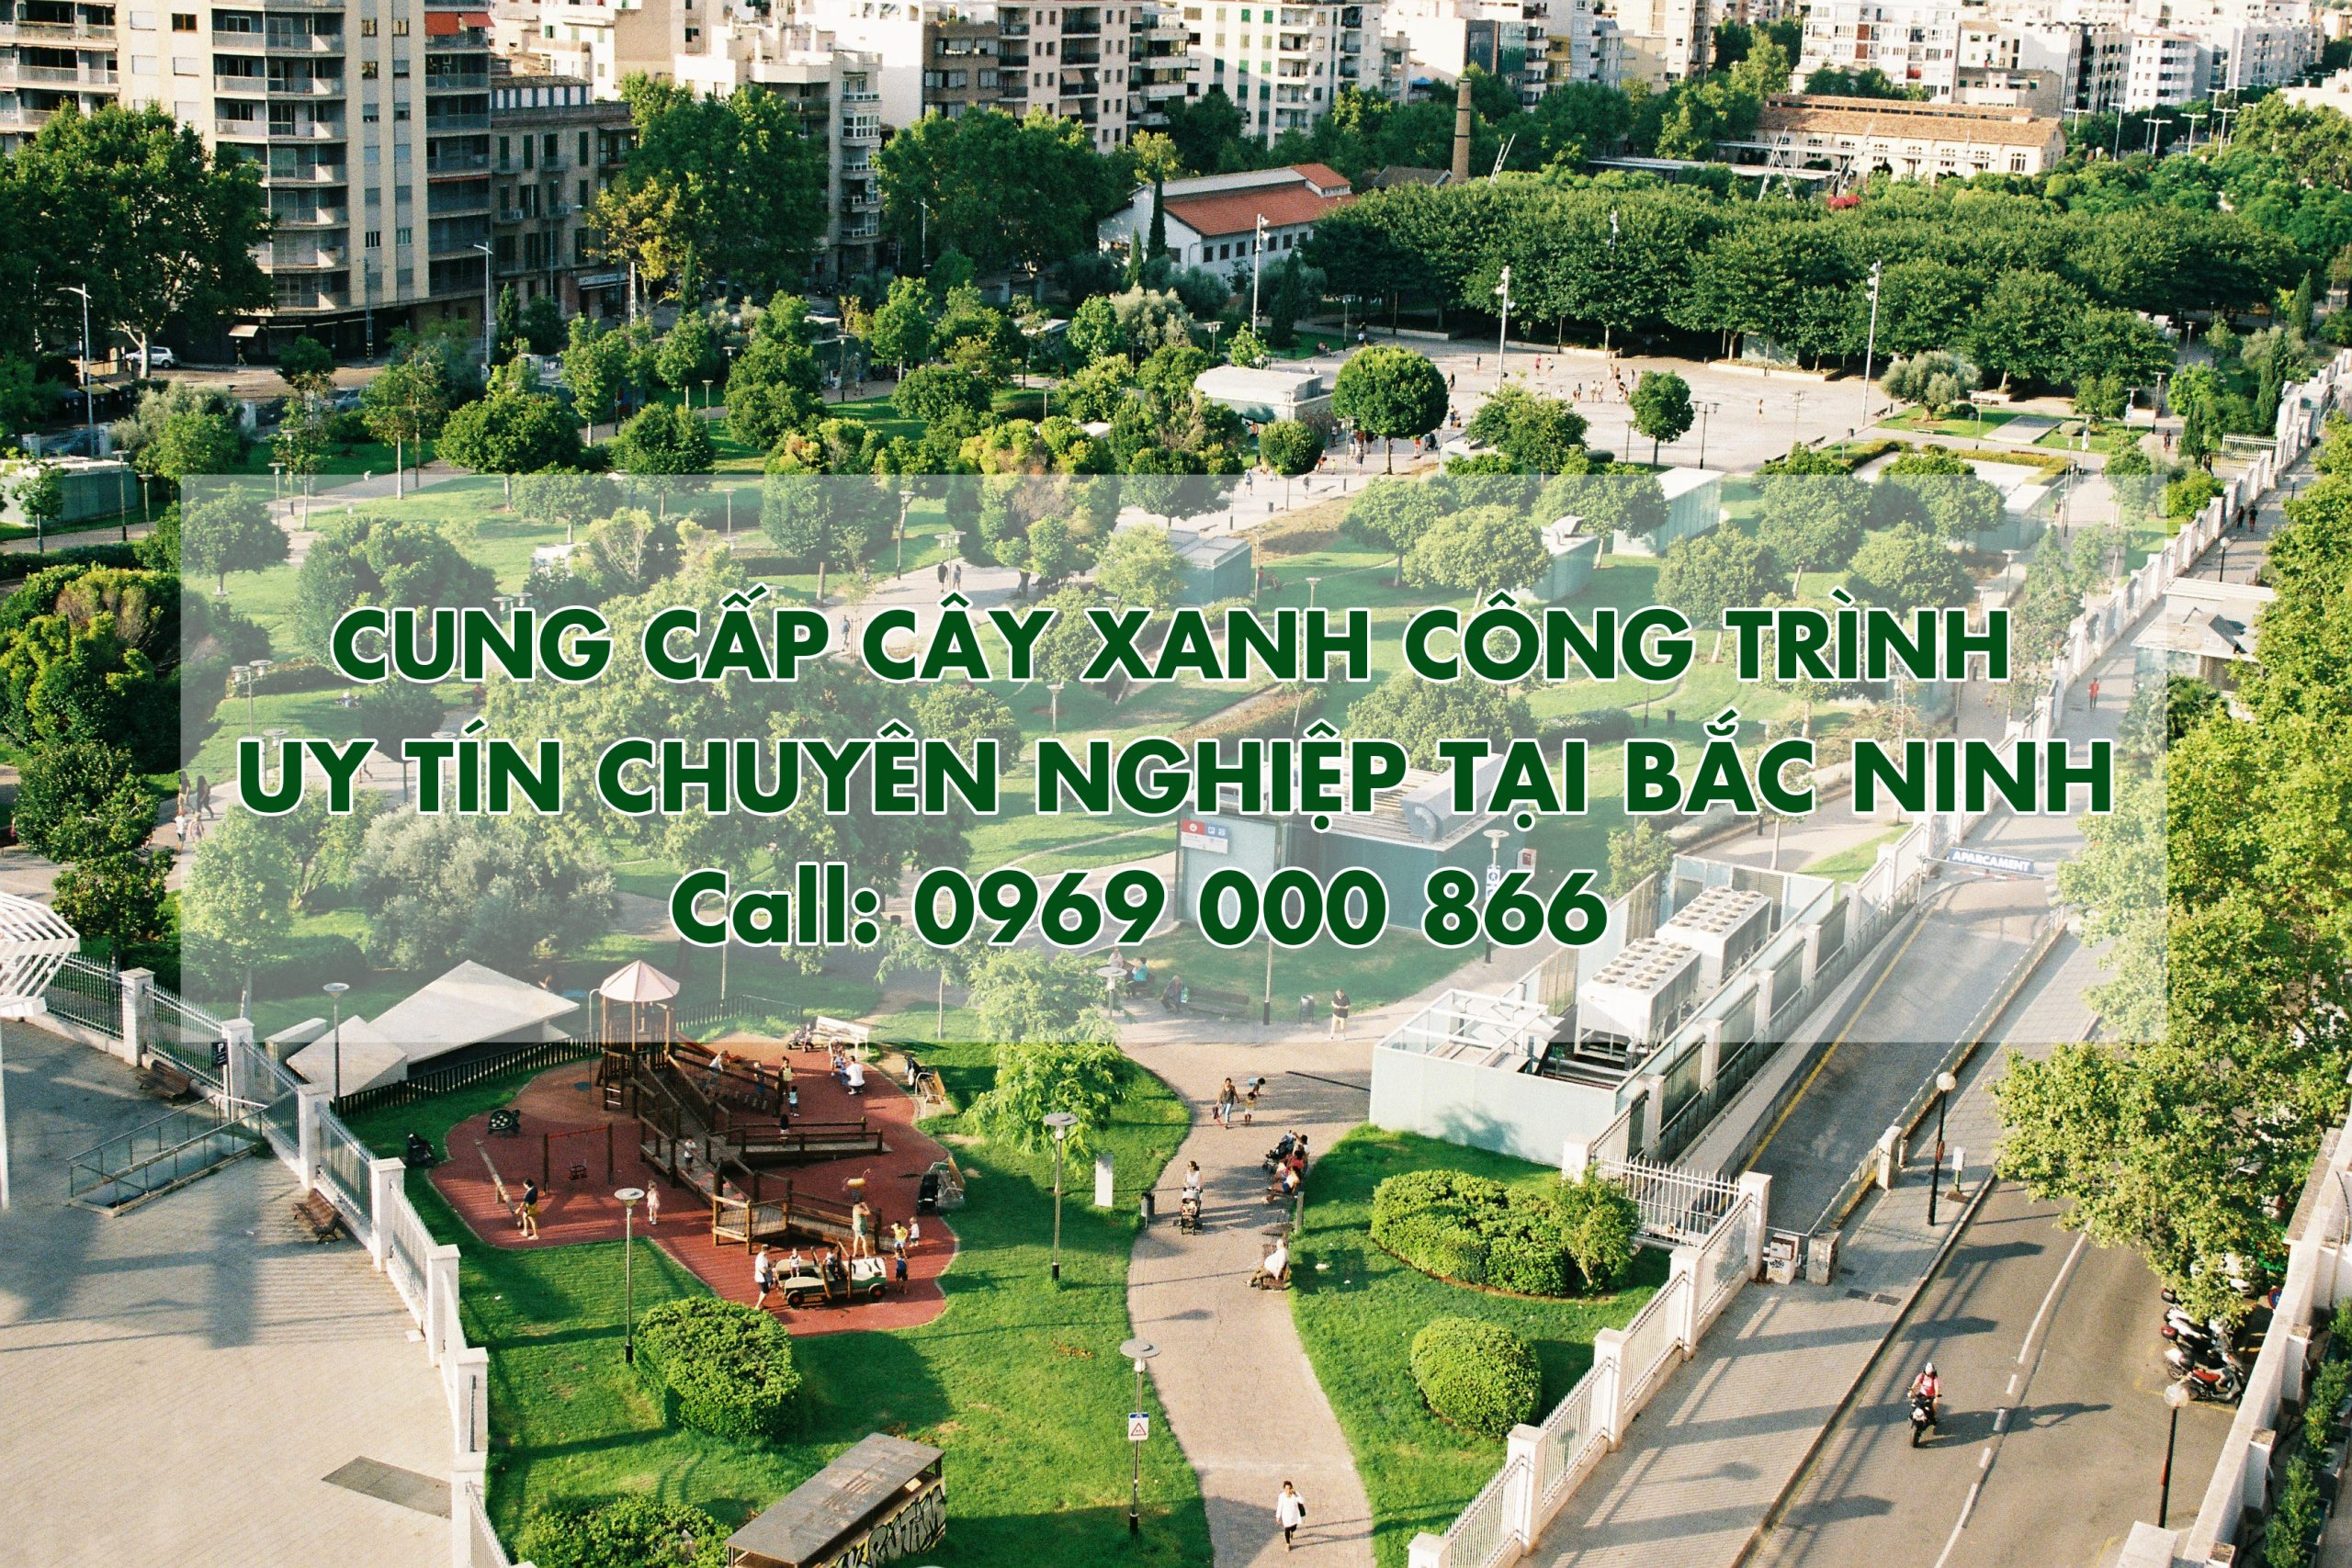 Cung cấp Cây Xanh công trình tại Bắc Ninh uy tín, chuyên nghiệp